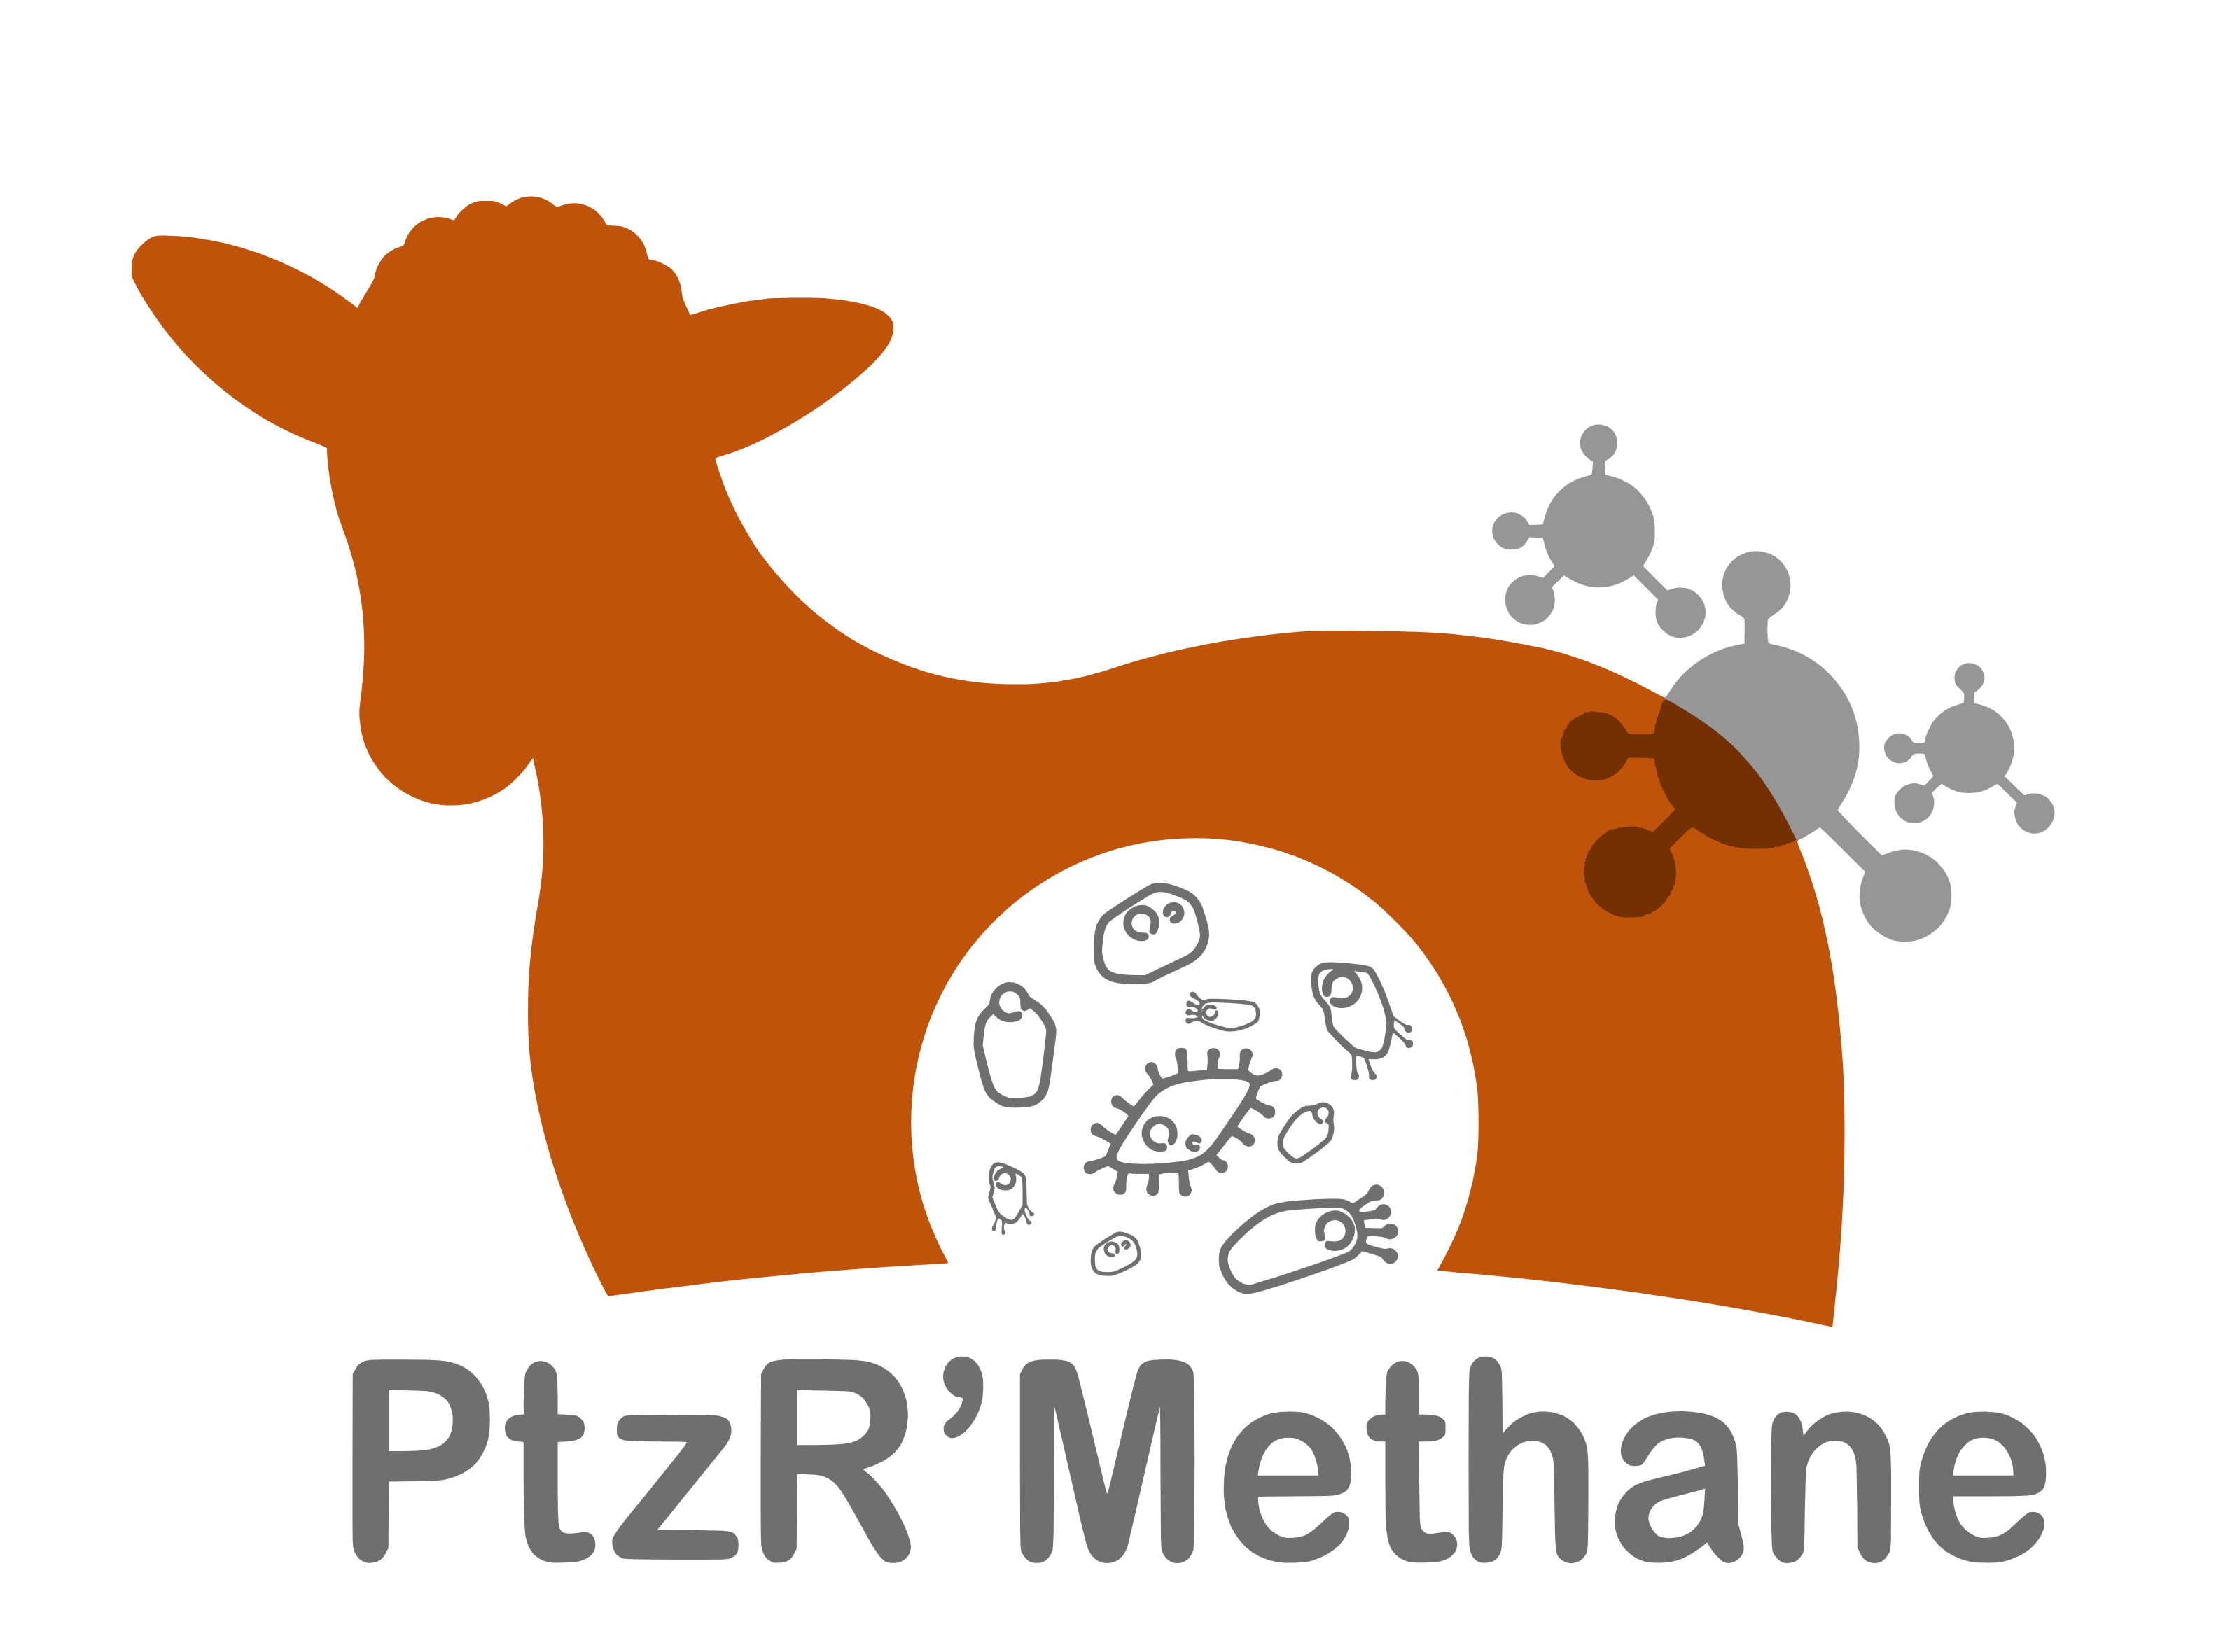 PtzR'methane - Influência da comunidade de protozoários ... Imagem 1